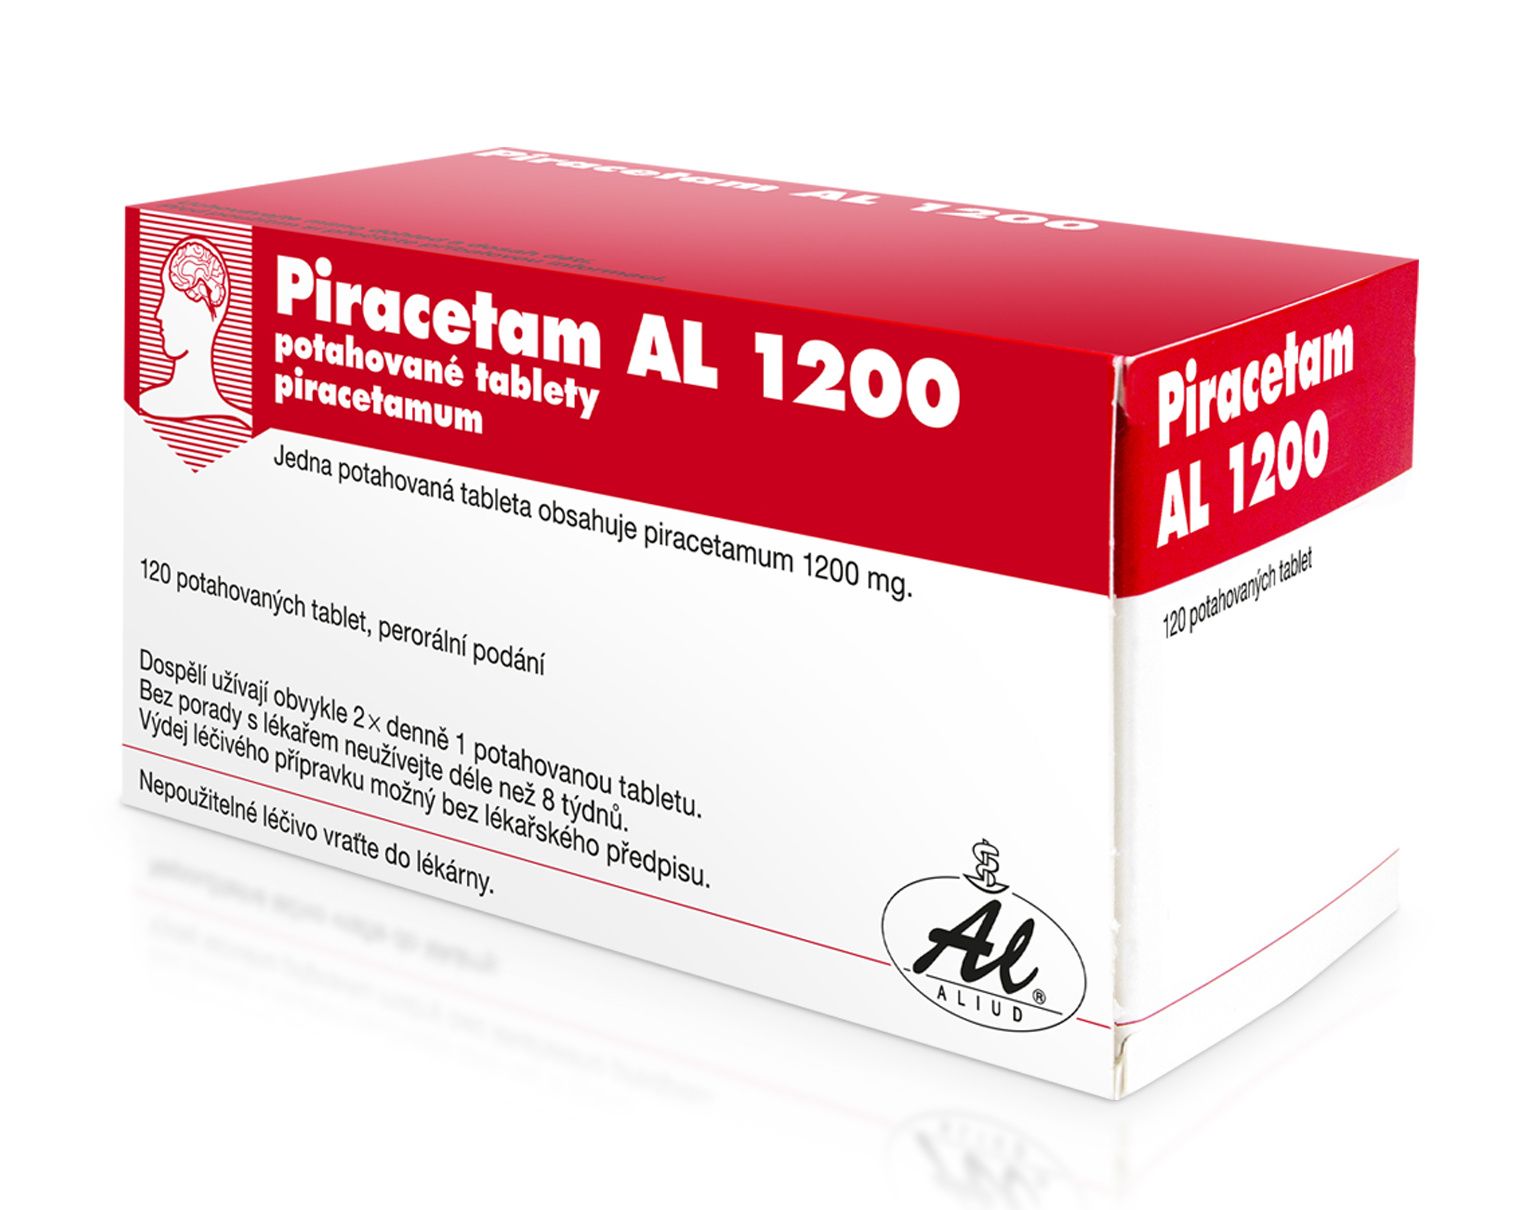 Piracetam AL 1200 mg 120 potahovaných tablet Piracetam